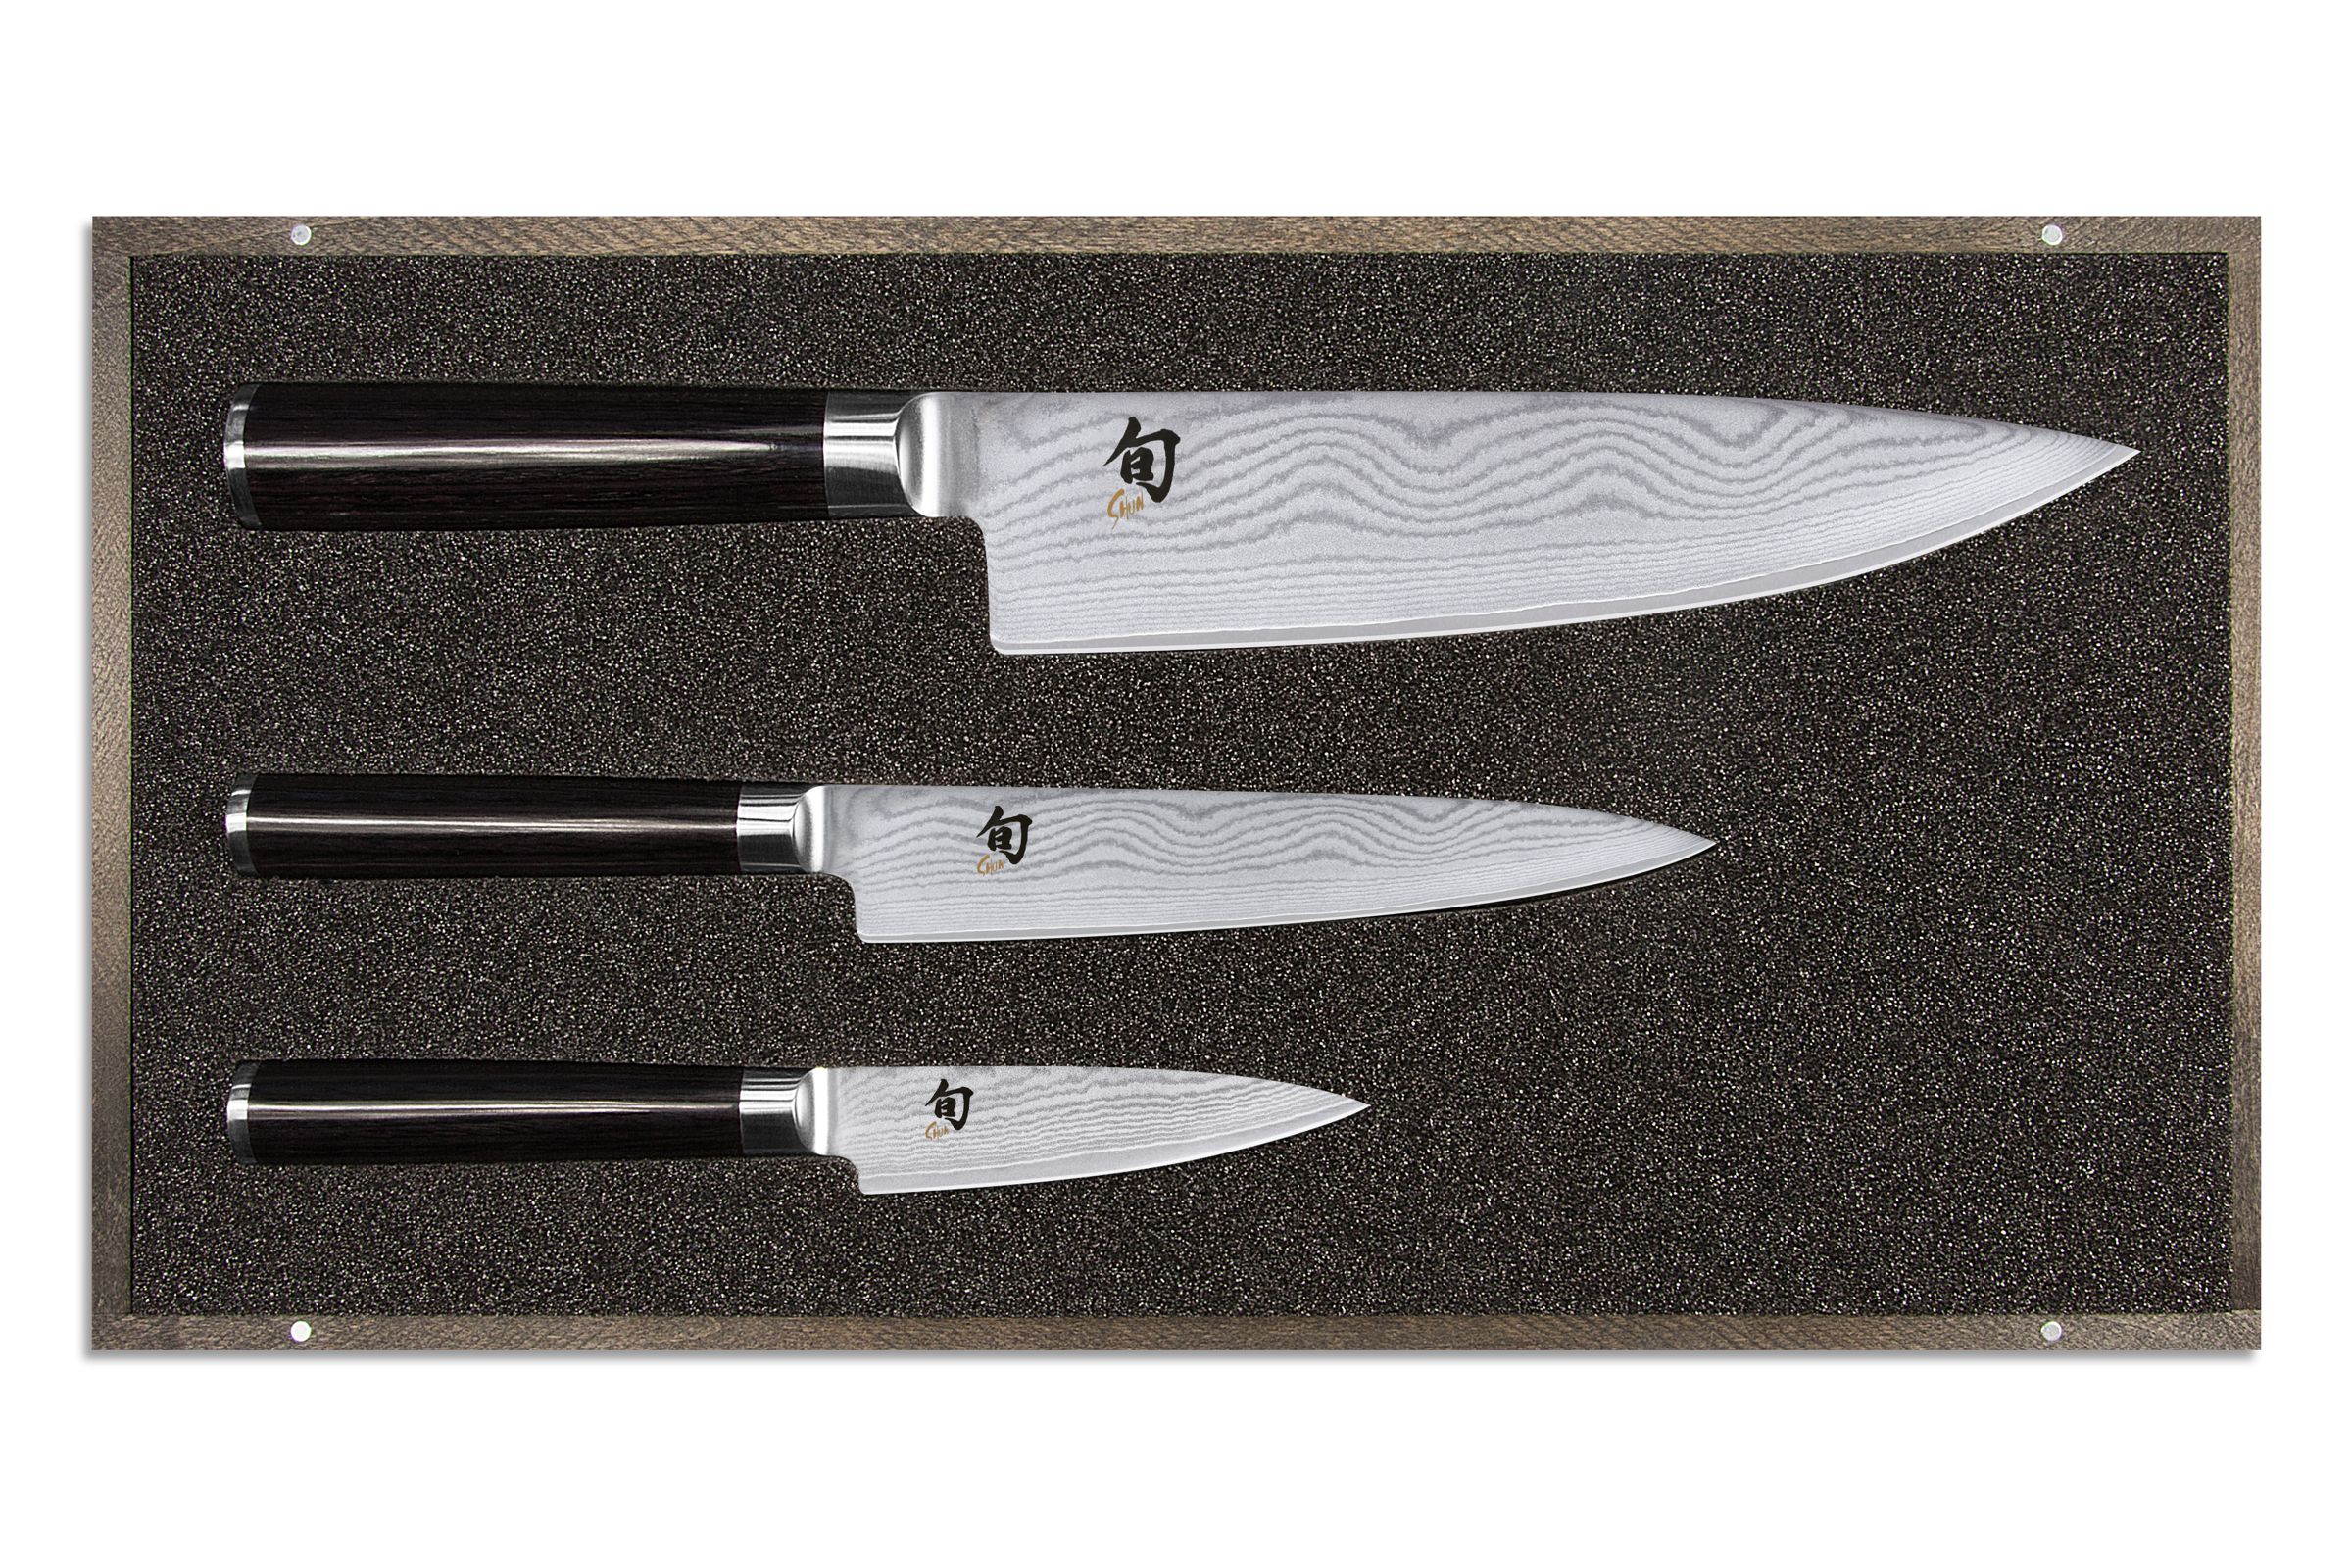 KAI Shun Classic Messer-Set 3-teilig - bestehend aus Kochmesser, Allzweckmesser und Officmesser - Produktansicht